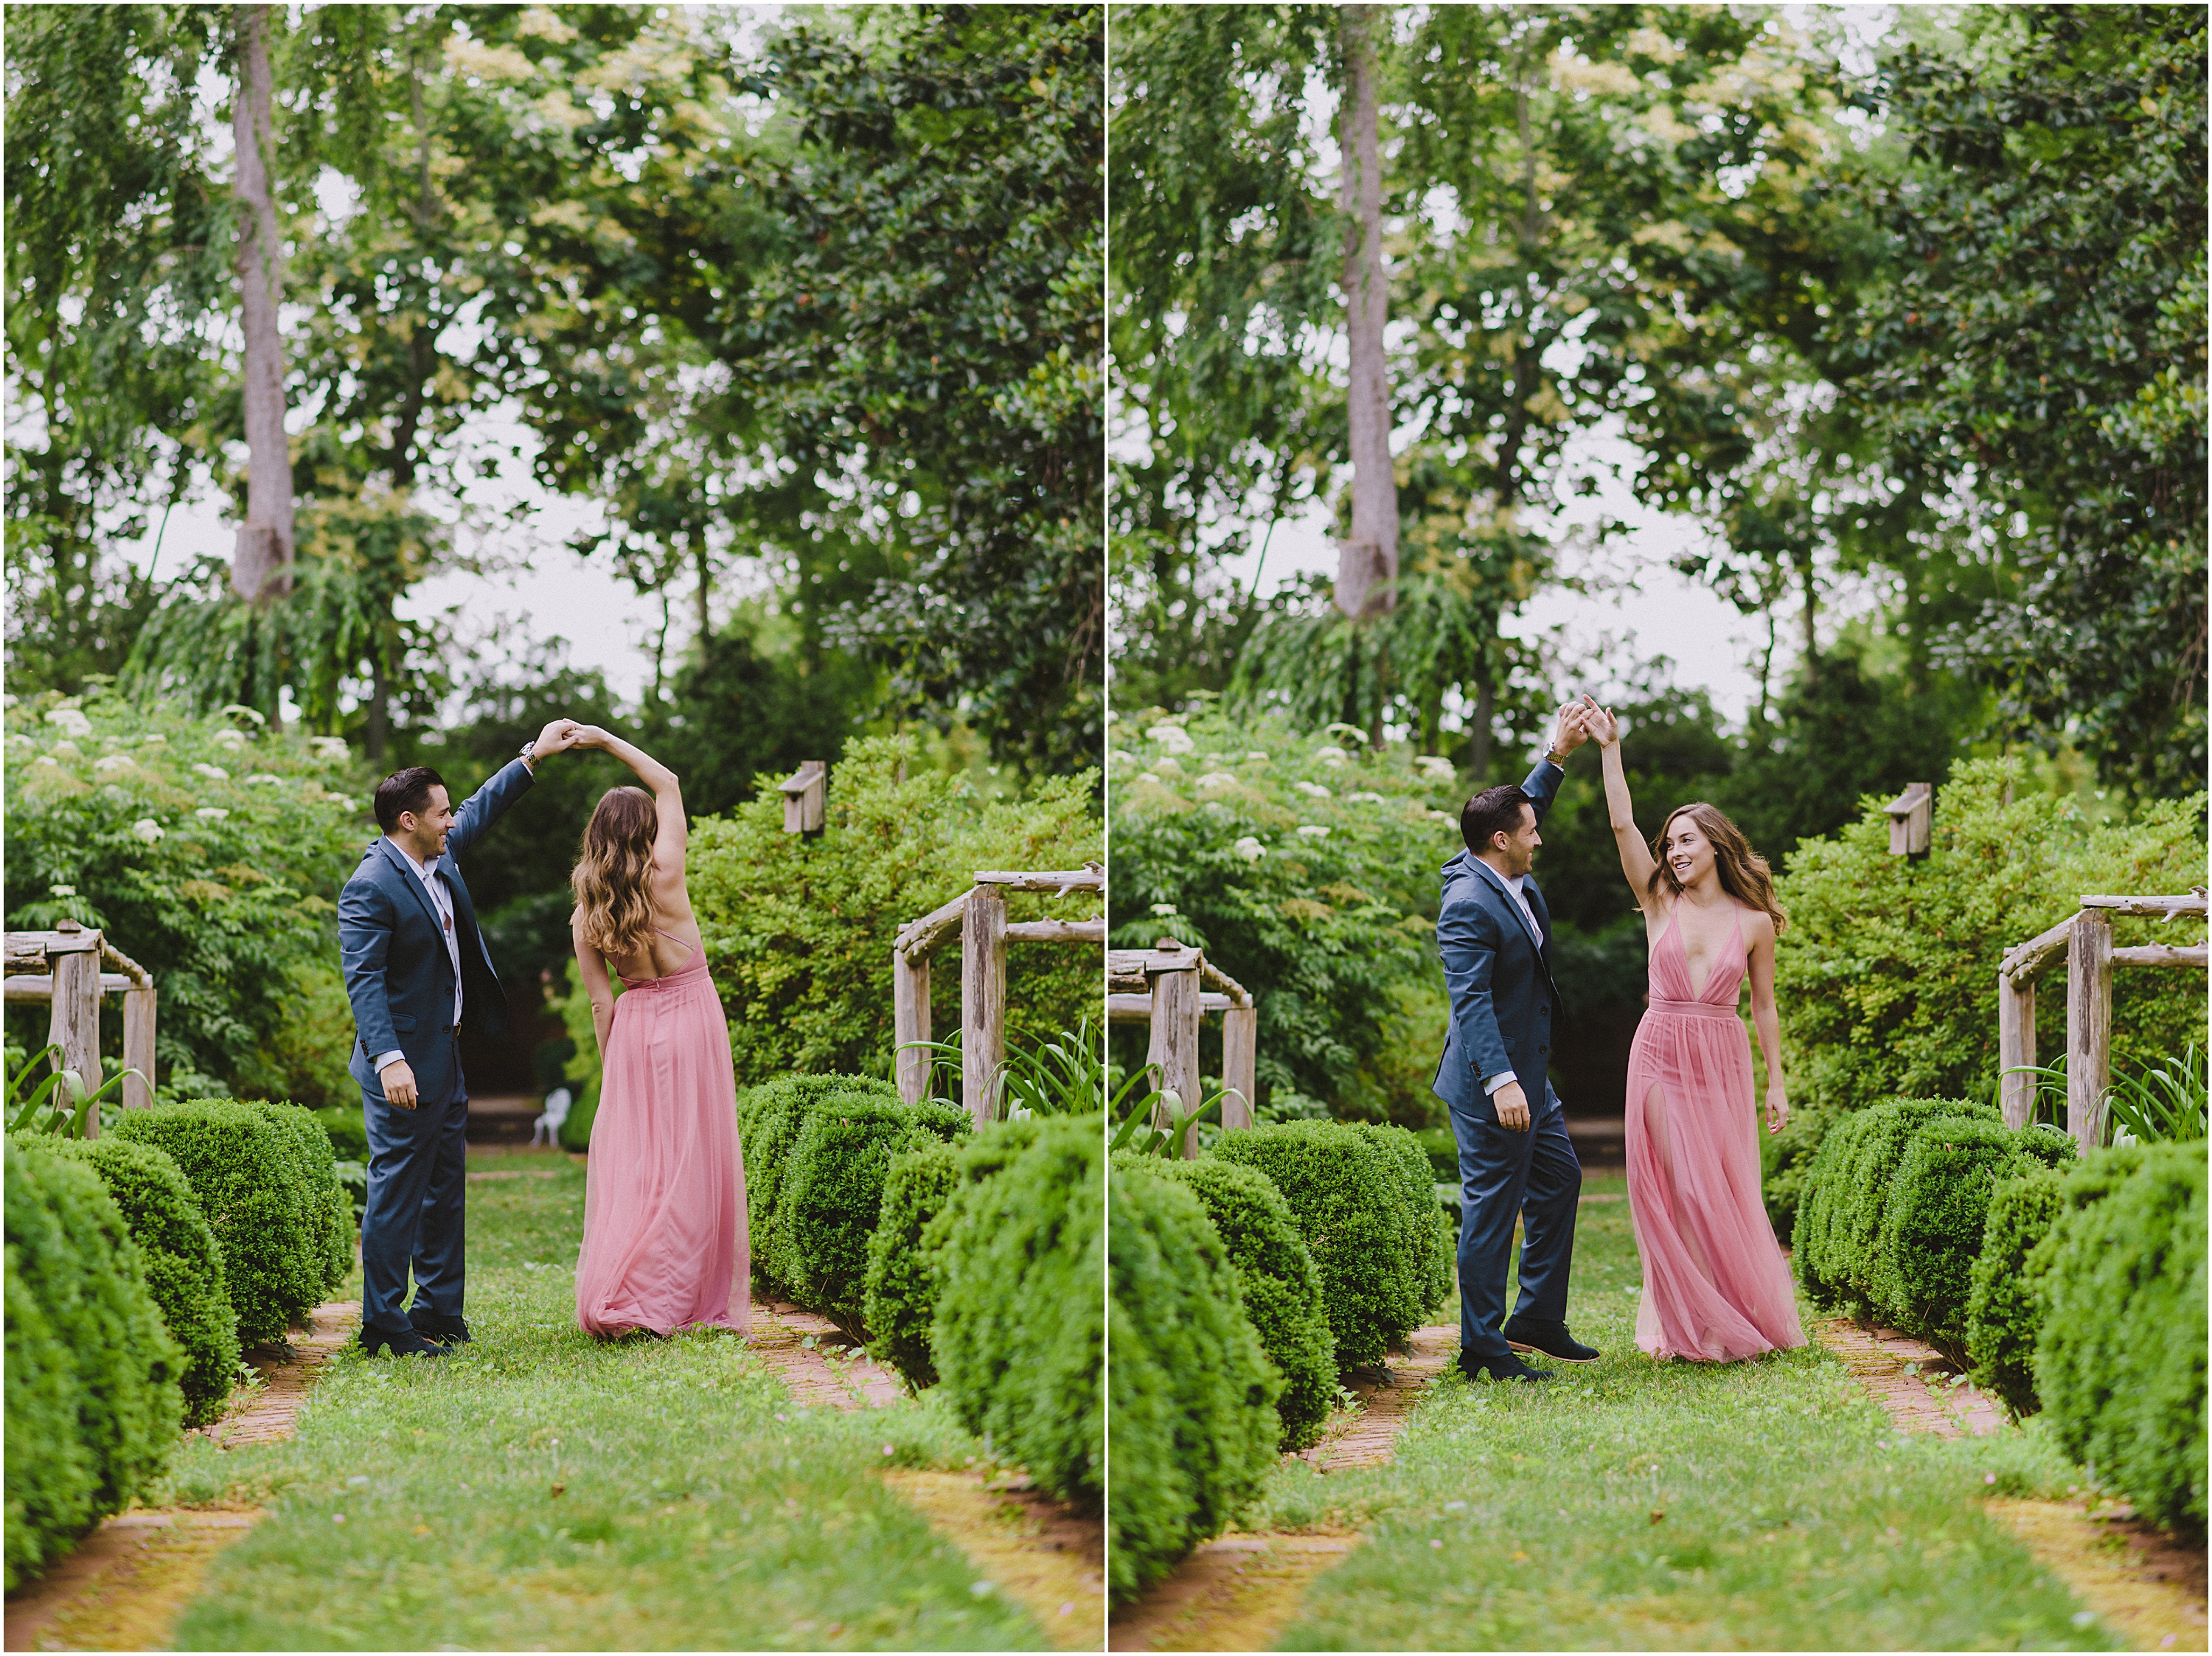 man twirling girl in a dance in a garden